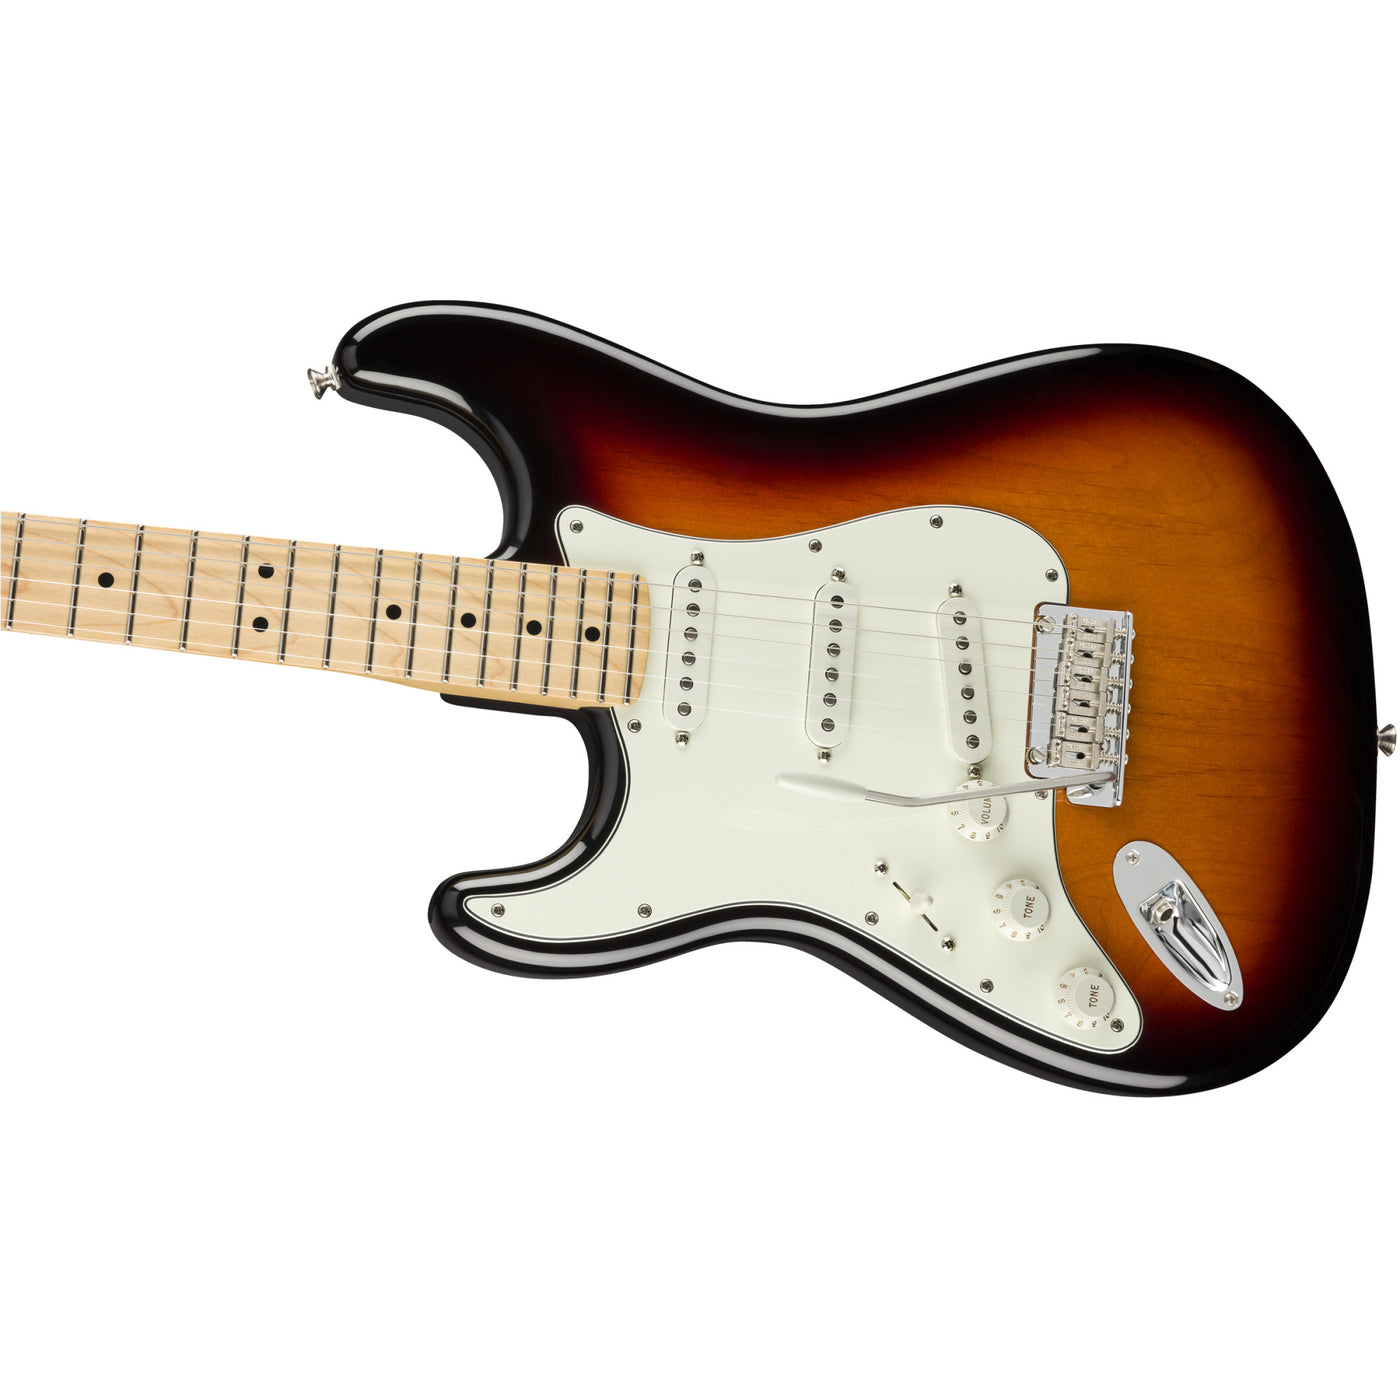 Fender Player Stratocaster Left-Handed Electric Guitar, 3-Color Sunburst (0144512500)